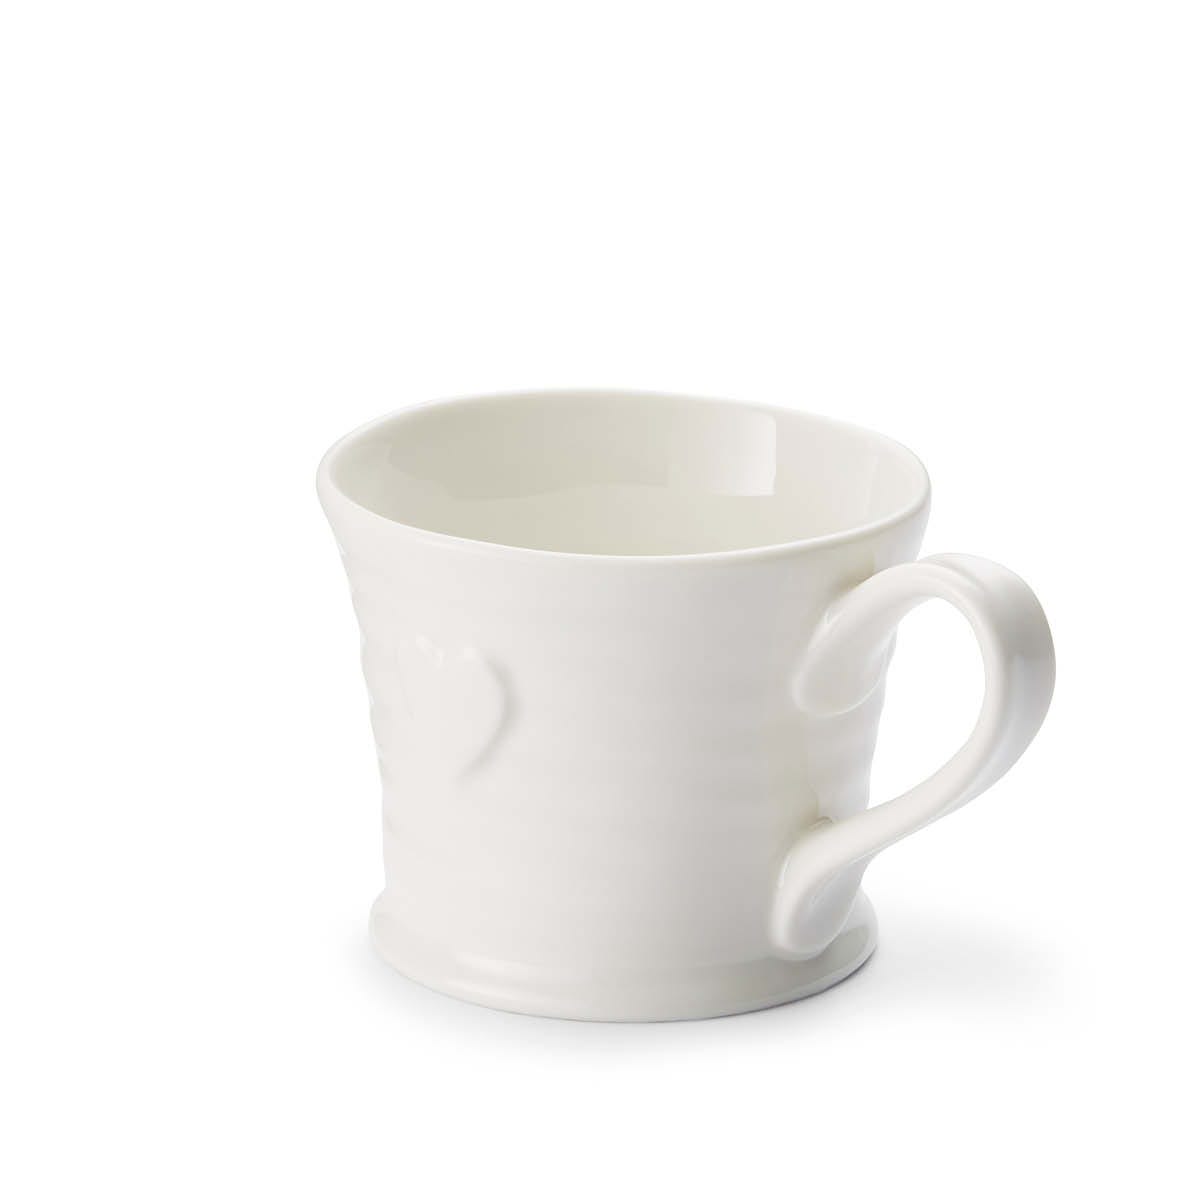 Sophie Conran for Portmeirion White Embossed Heart Mug Set of 4